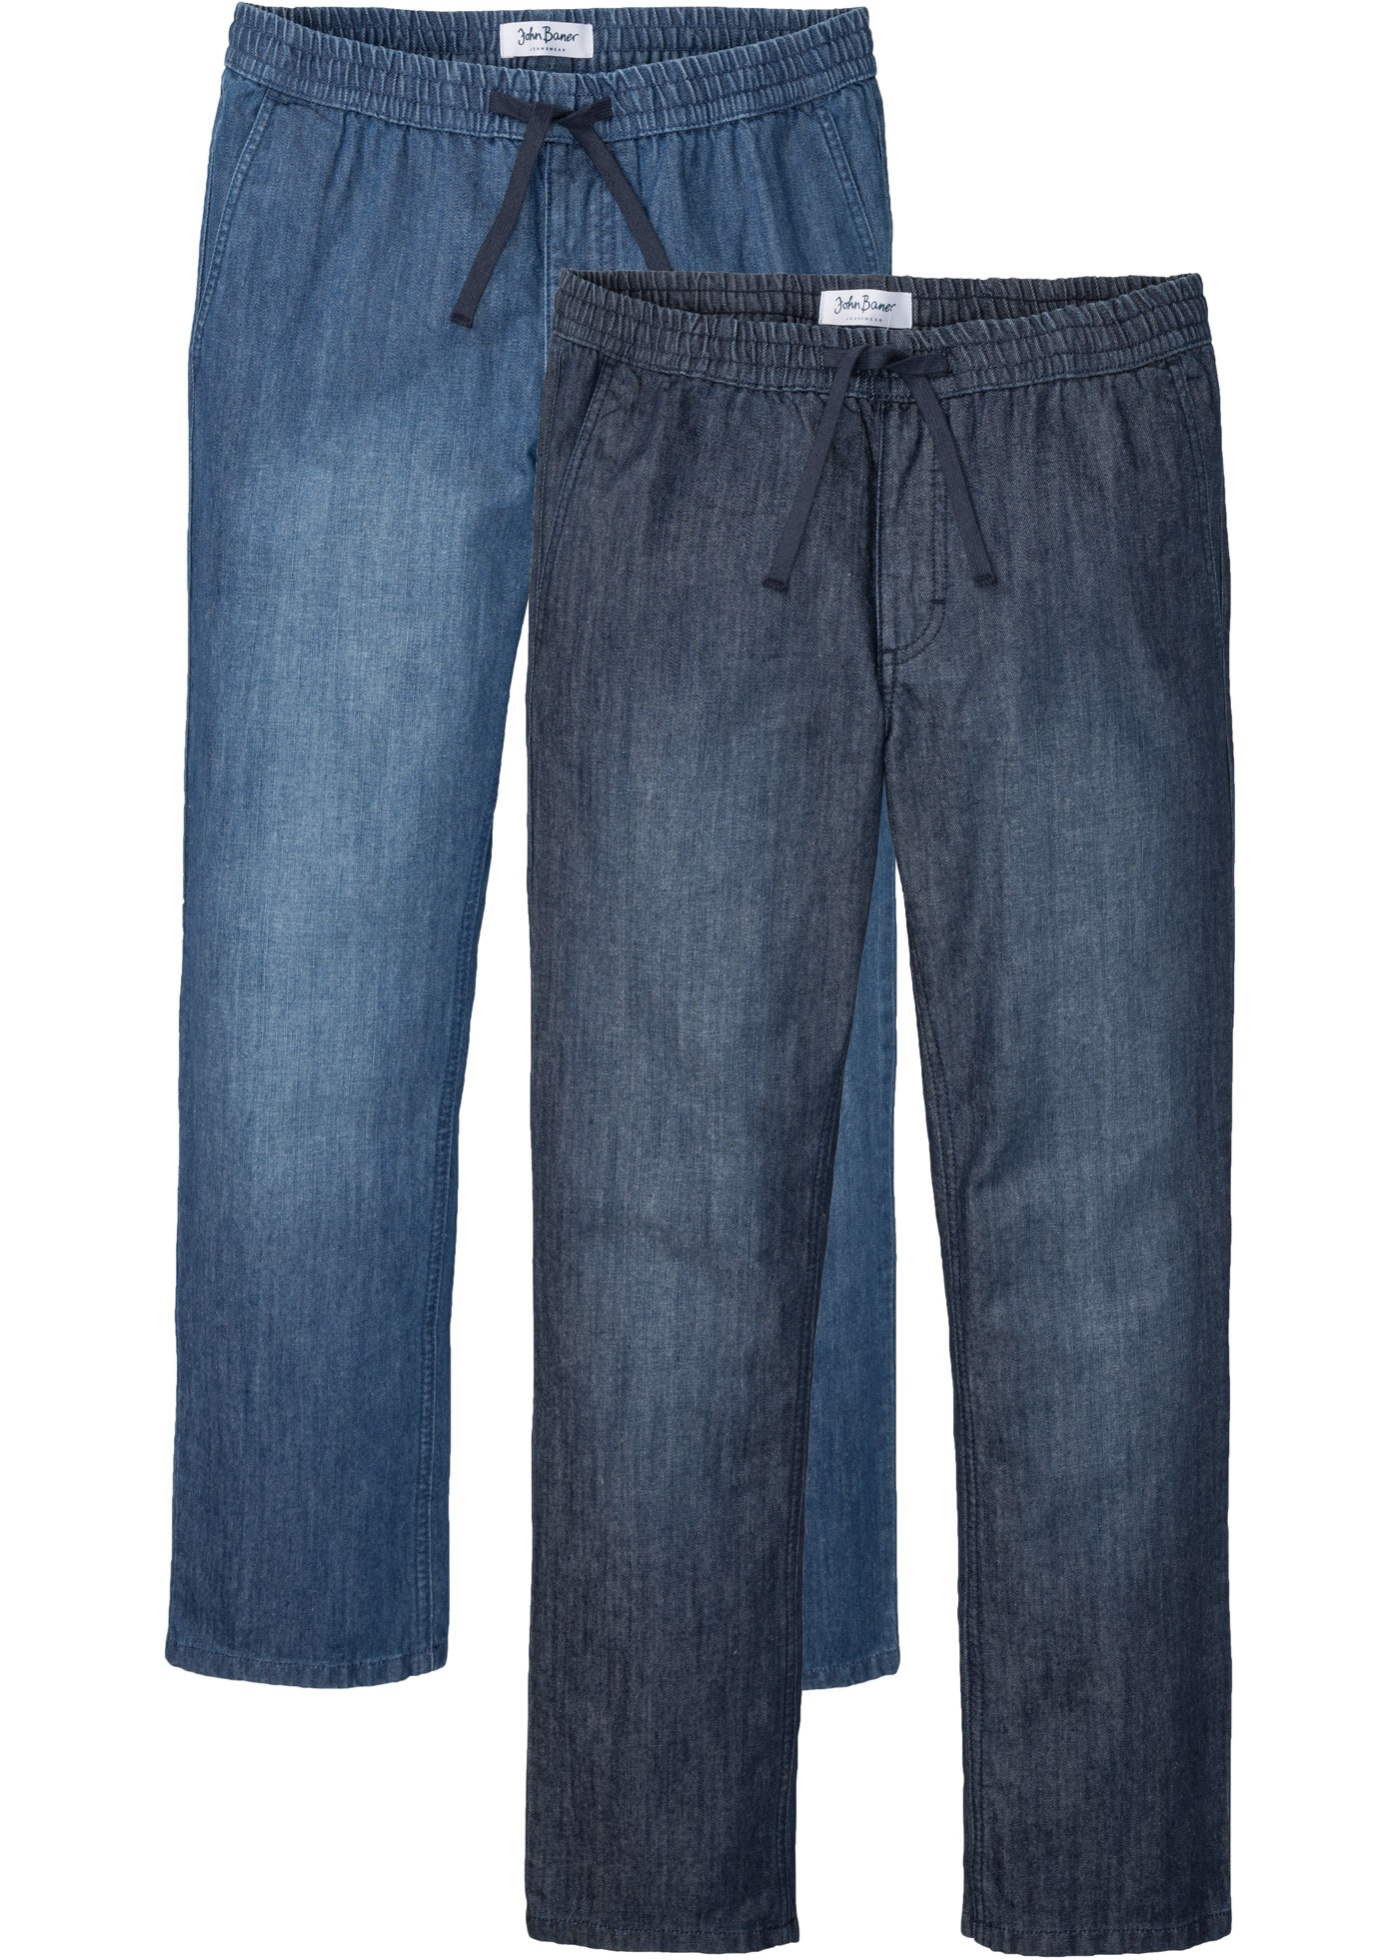 Bonprix - Regular fit jeans mit elastischem bund, straight (2er pack)